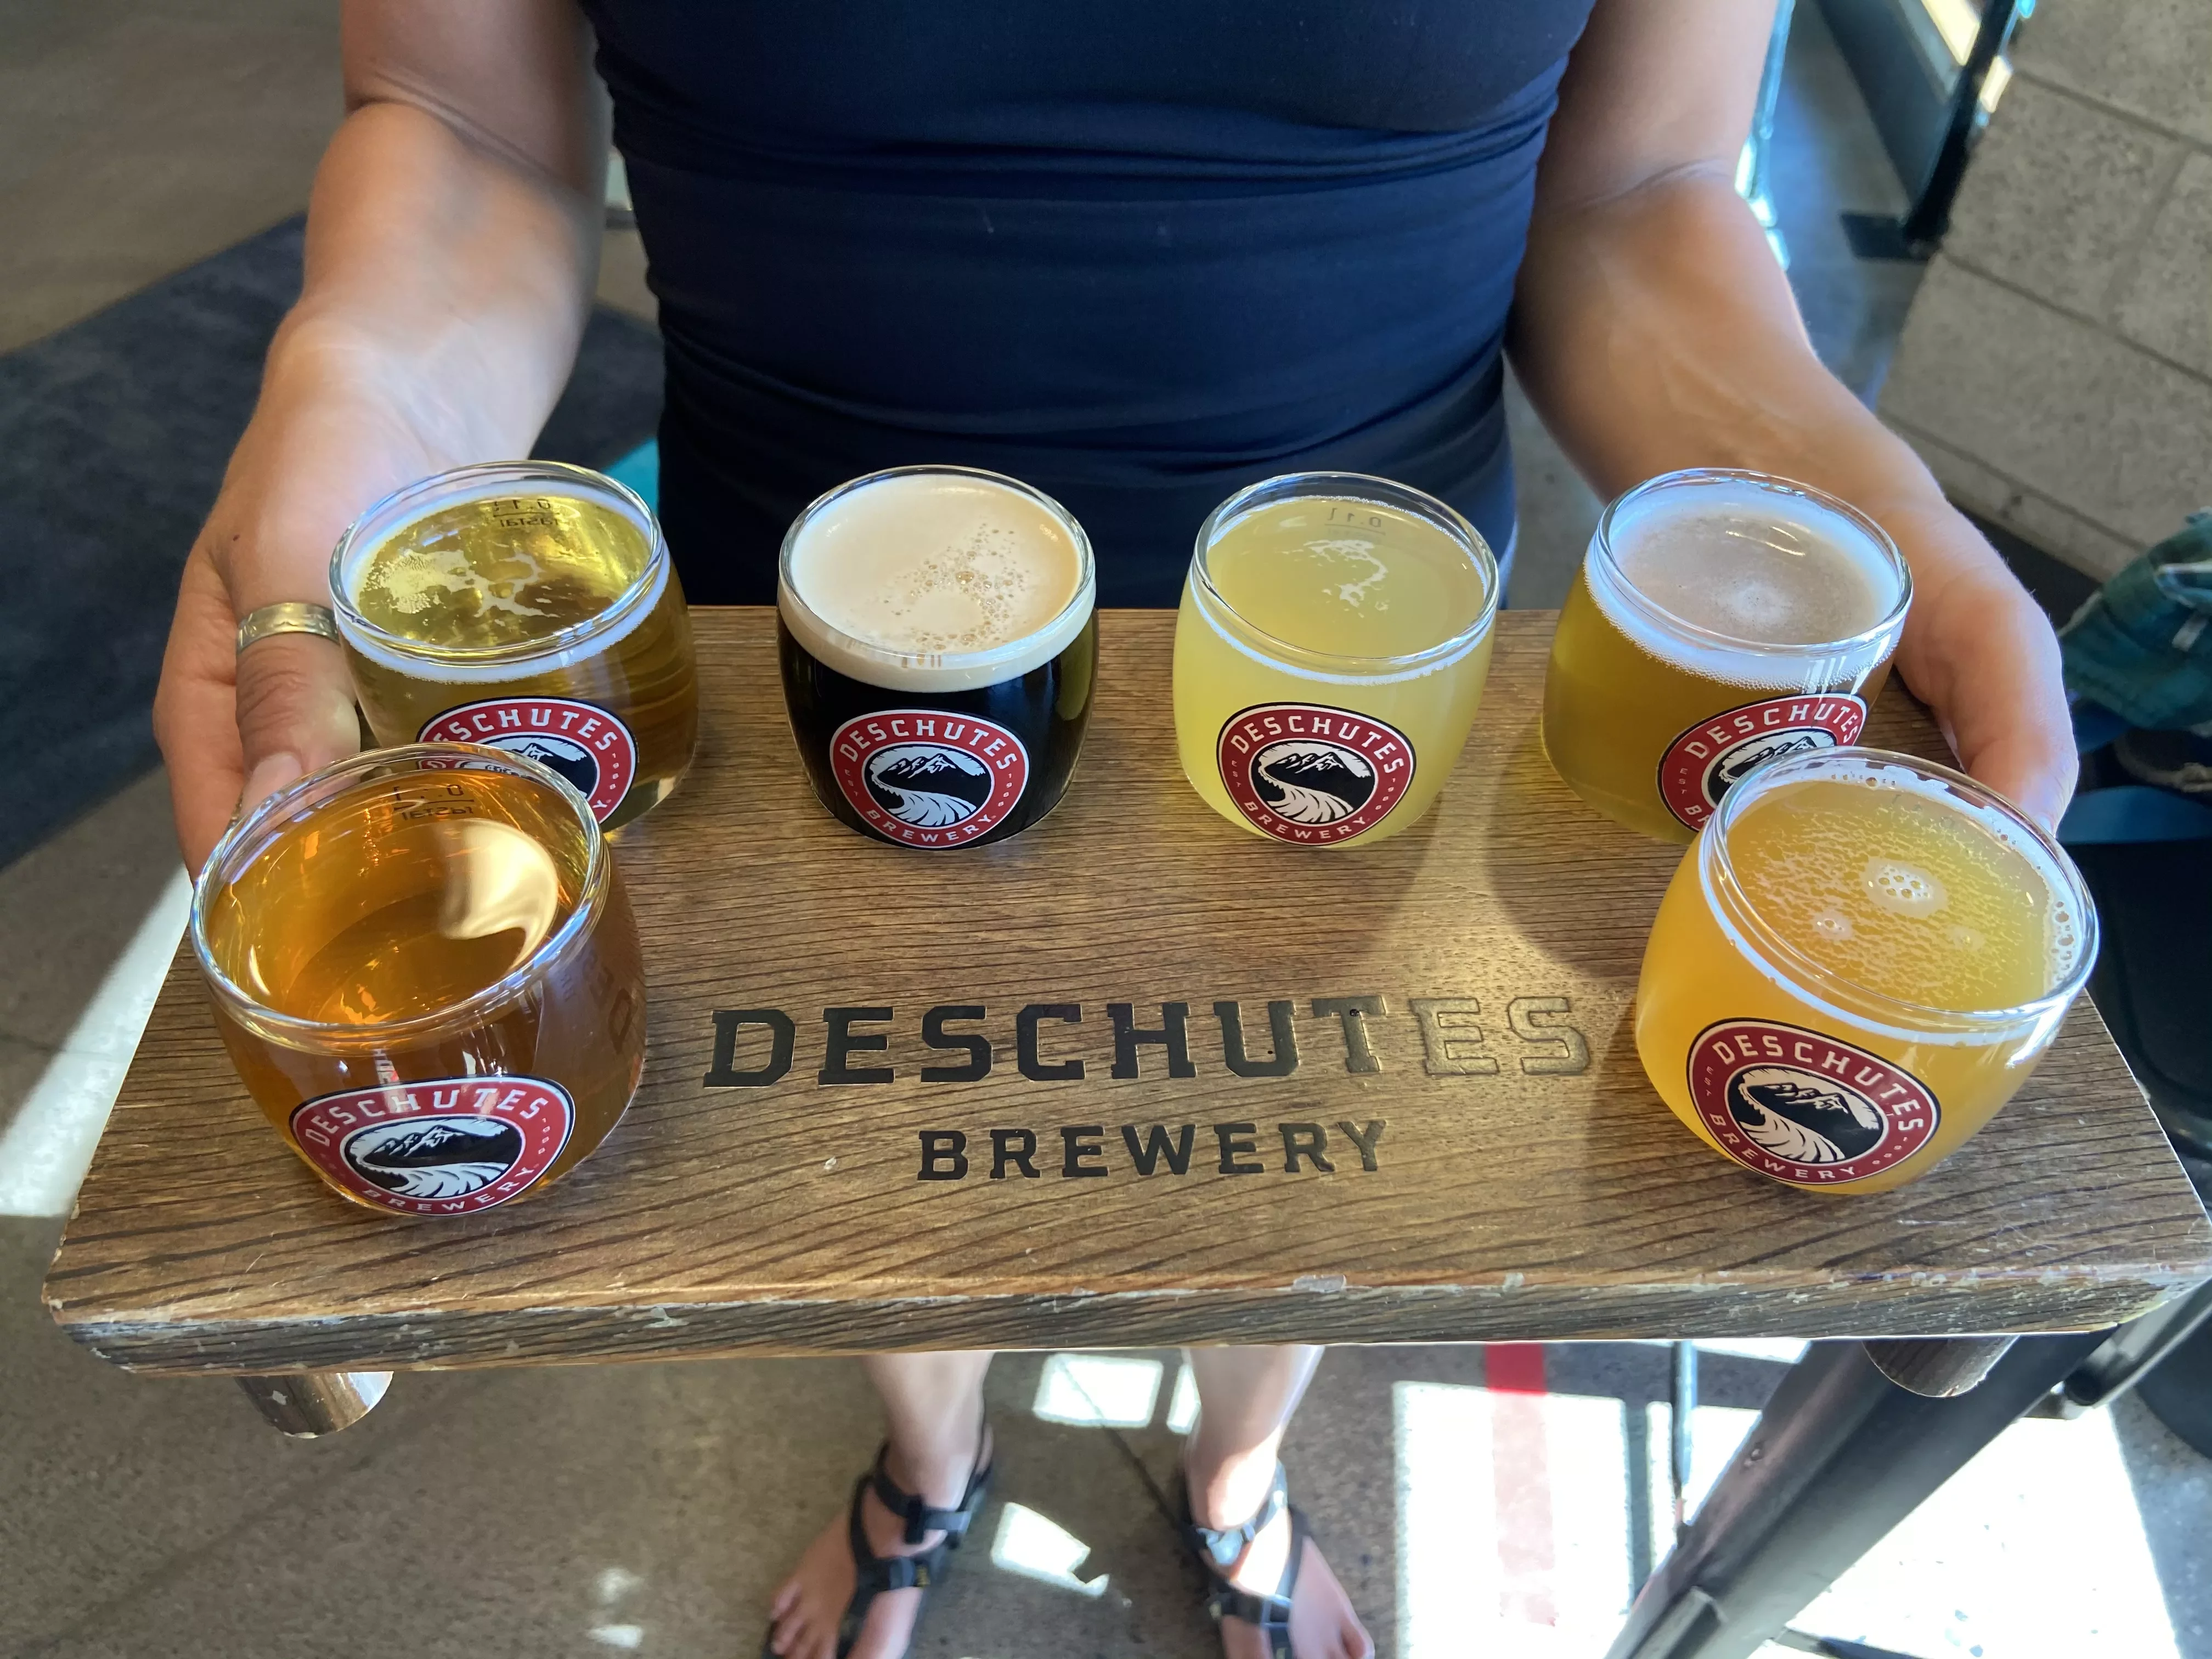 Flight of beers at Deschutes Brewery